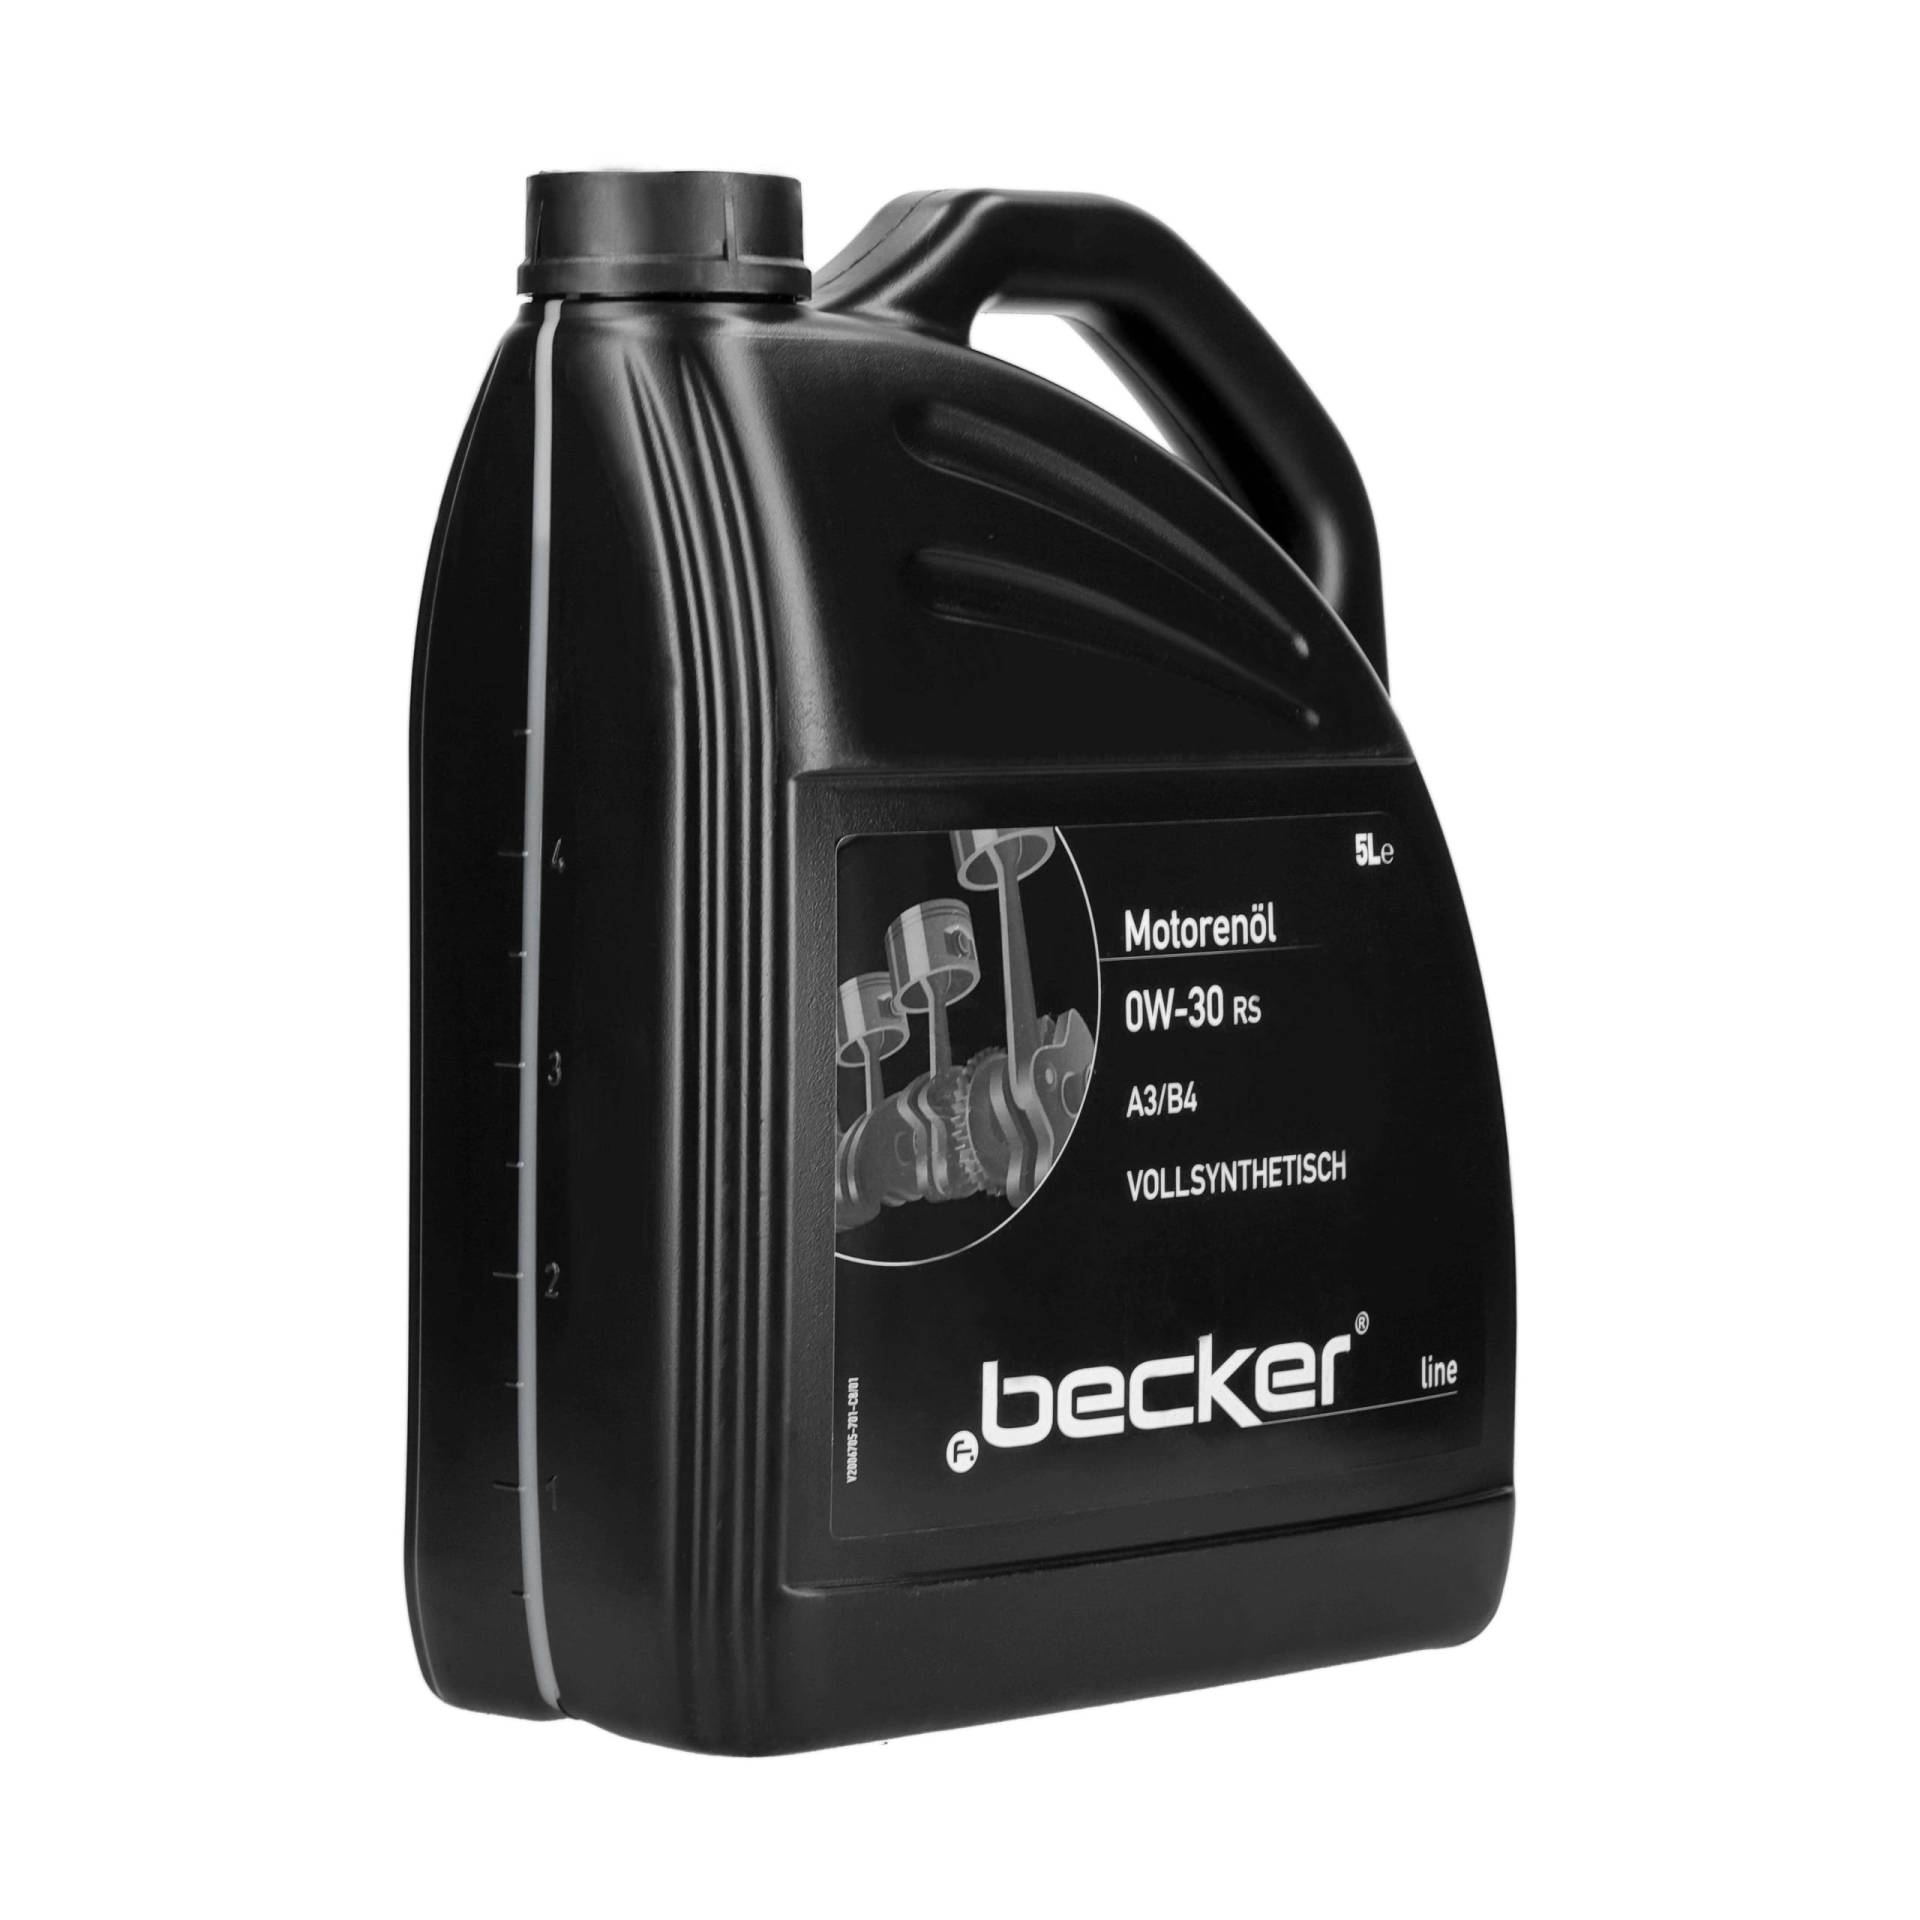 f.becker_line | Motoröl 0W-30 RS (5 L) (801 10021) passend für Motorenöl | Öl von F.becker_line